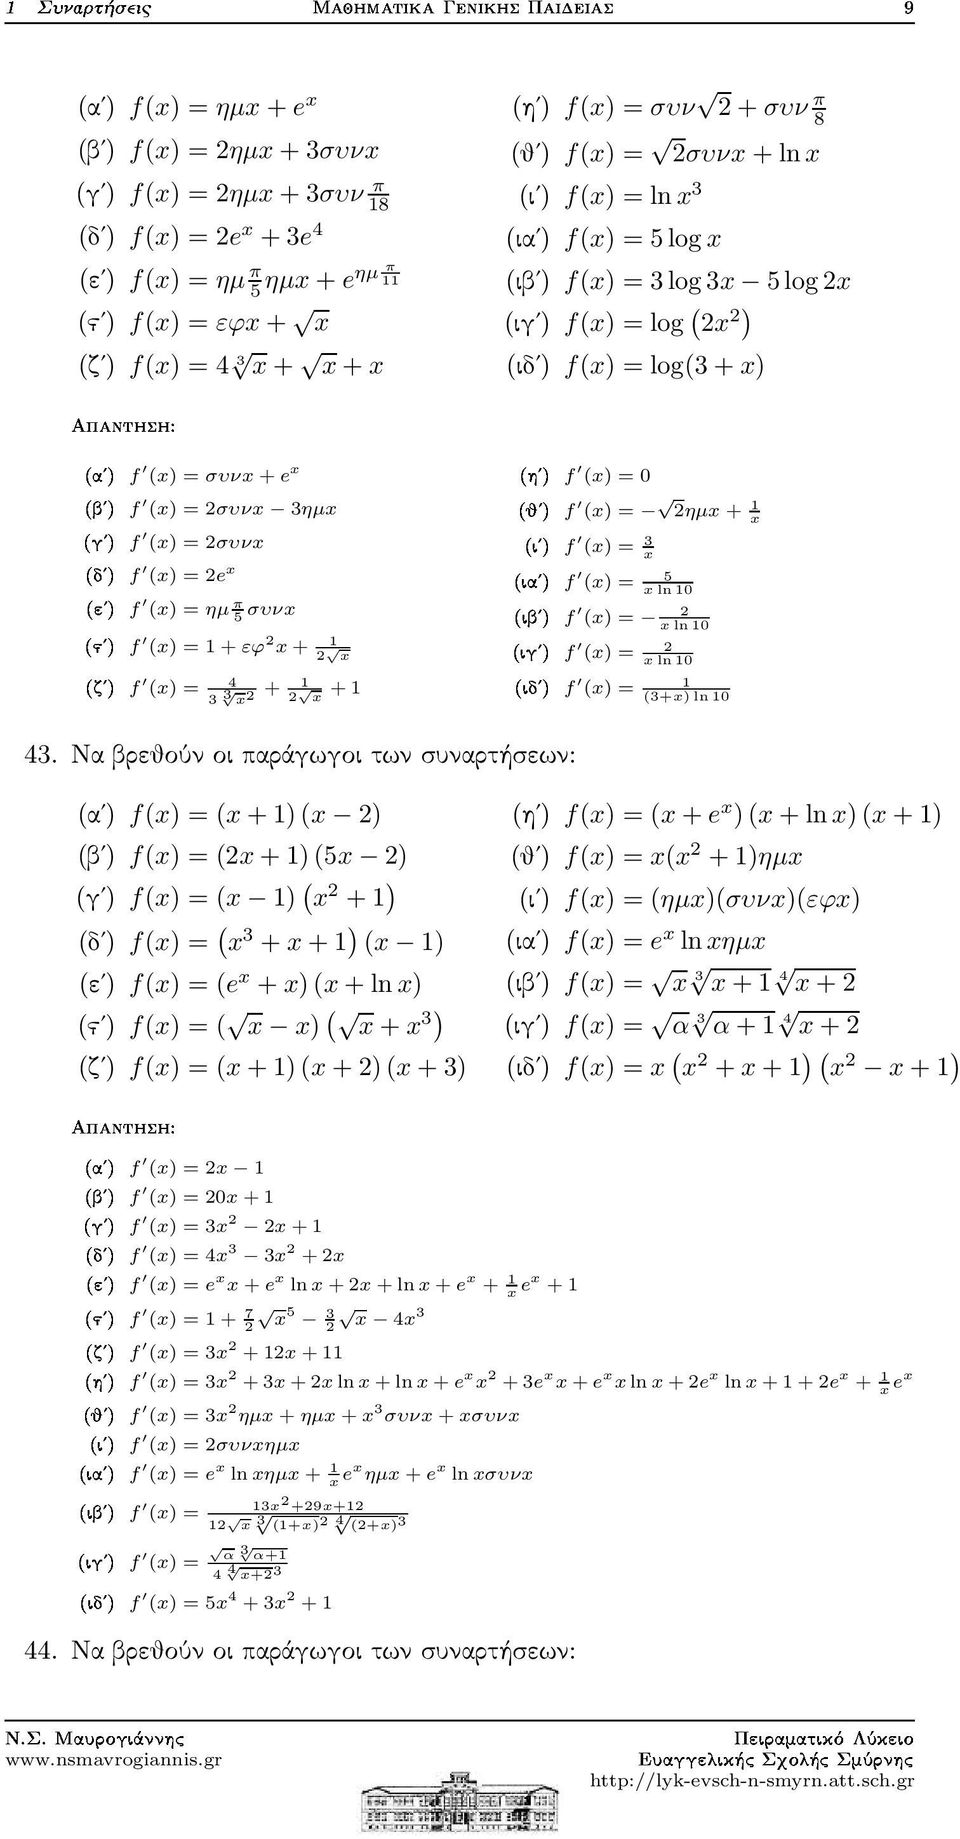 (x) = ηµ π 5 συνx (x) = 1 + εϕ x+ 1 x (x) = 4 3 3 x + 1 x + 1 (x) = 0 µf µf µf µf (x) = ηµx + 1 x (x) = 3 x (x) = 5 xln10 (x) = xln10 (x) = xln10 (x) = 1 (3+x) ln10 43.